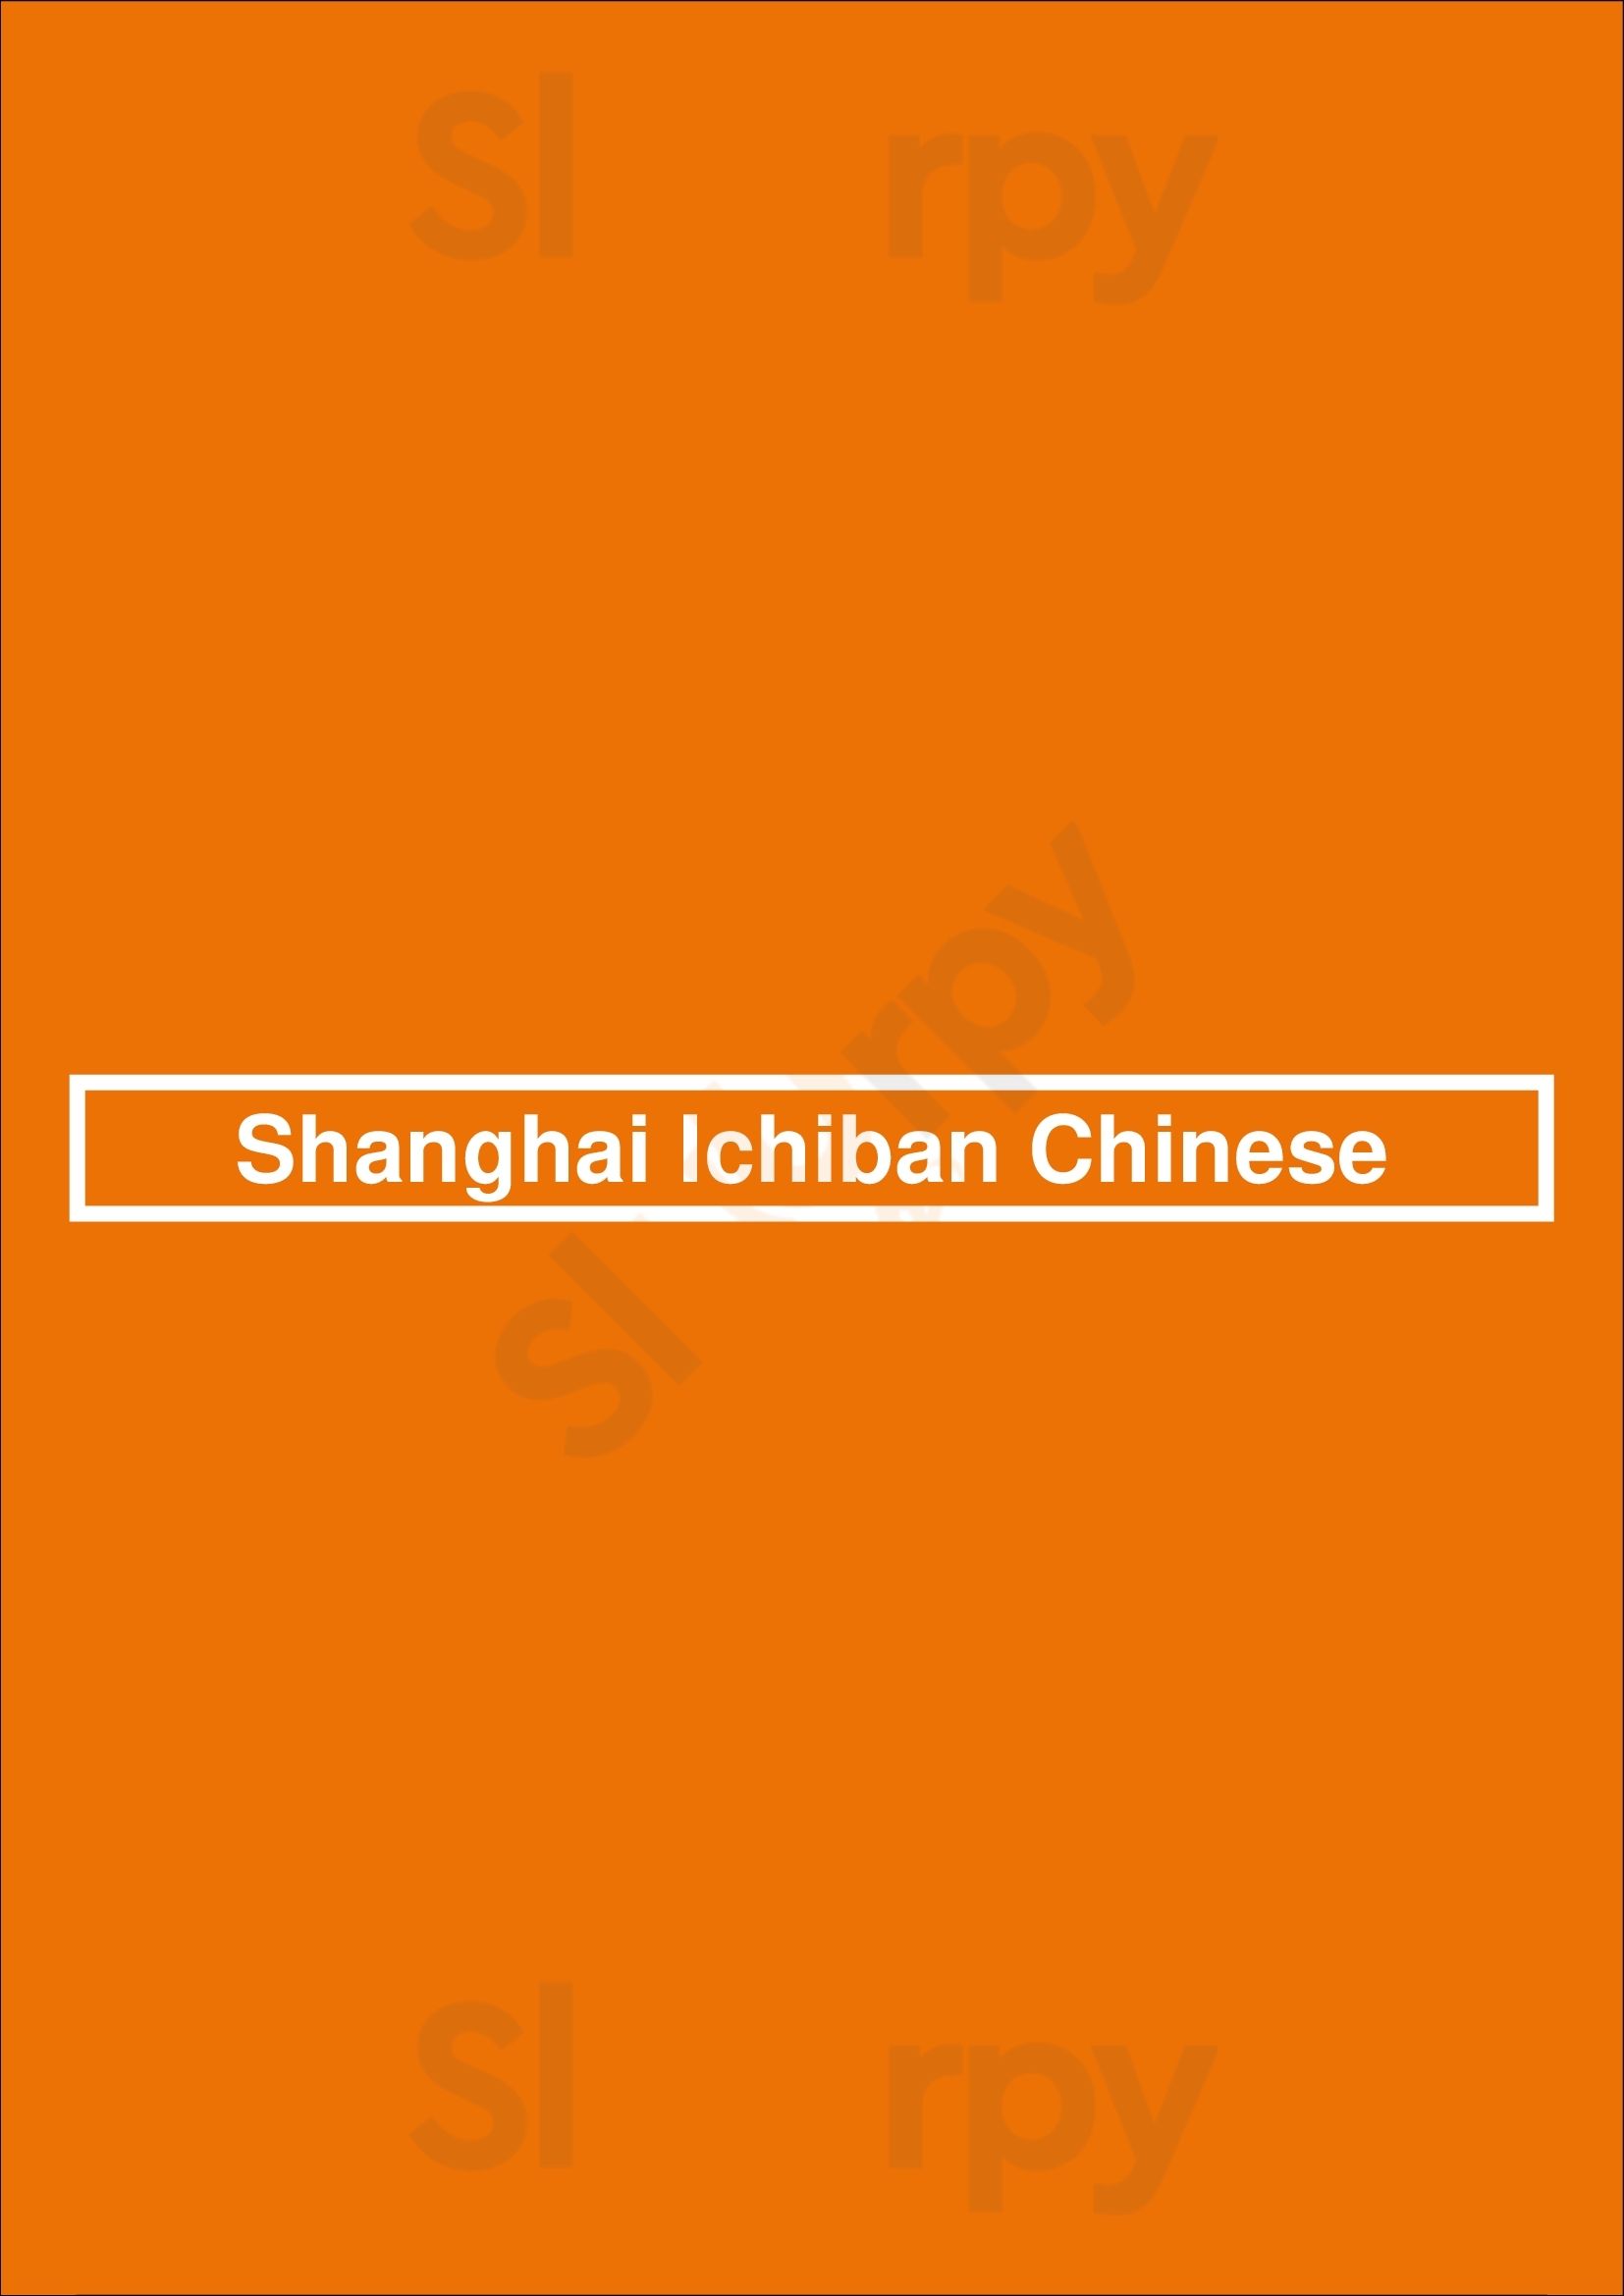 Shanghai Ichiban Chinese Grand Rapids Menu - 1